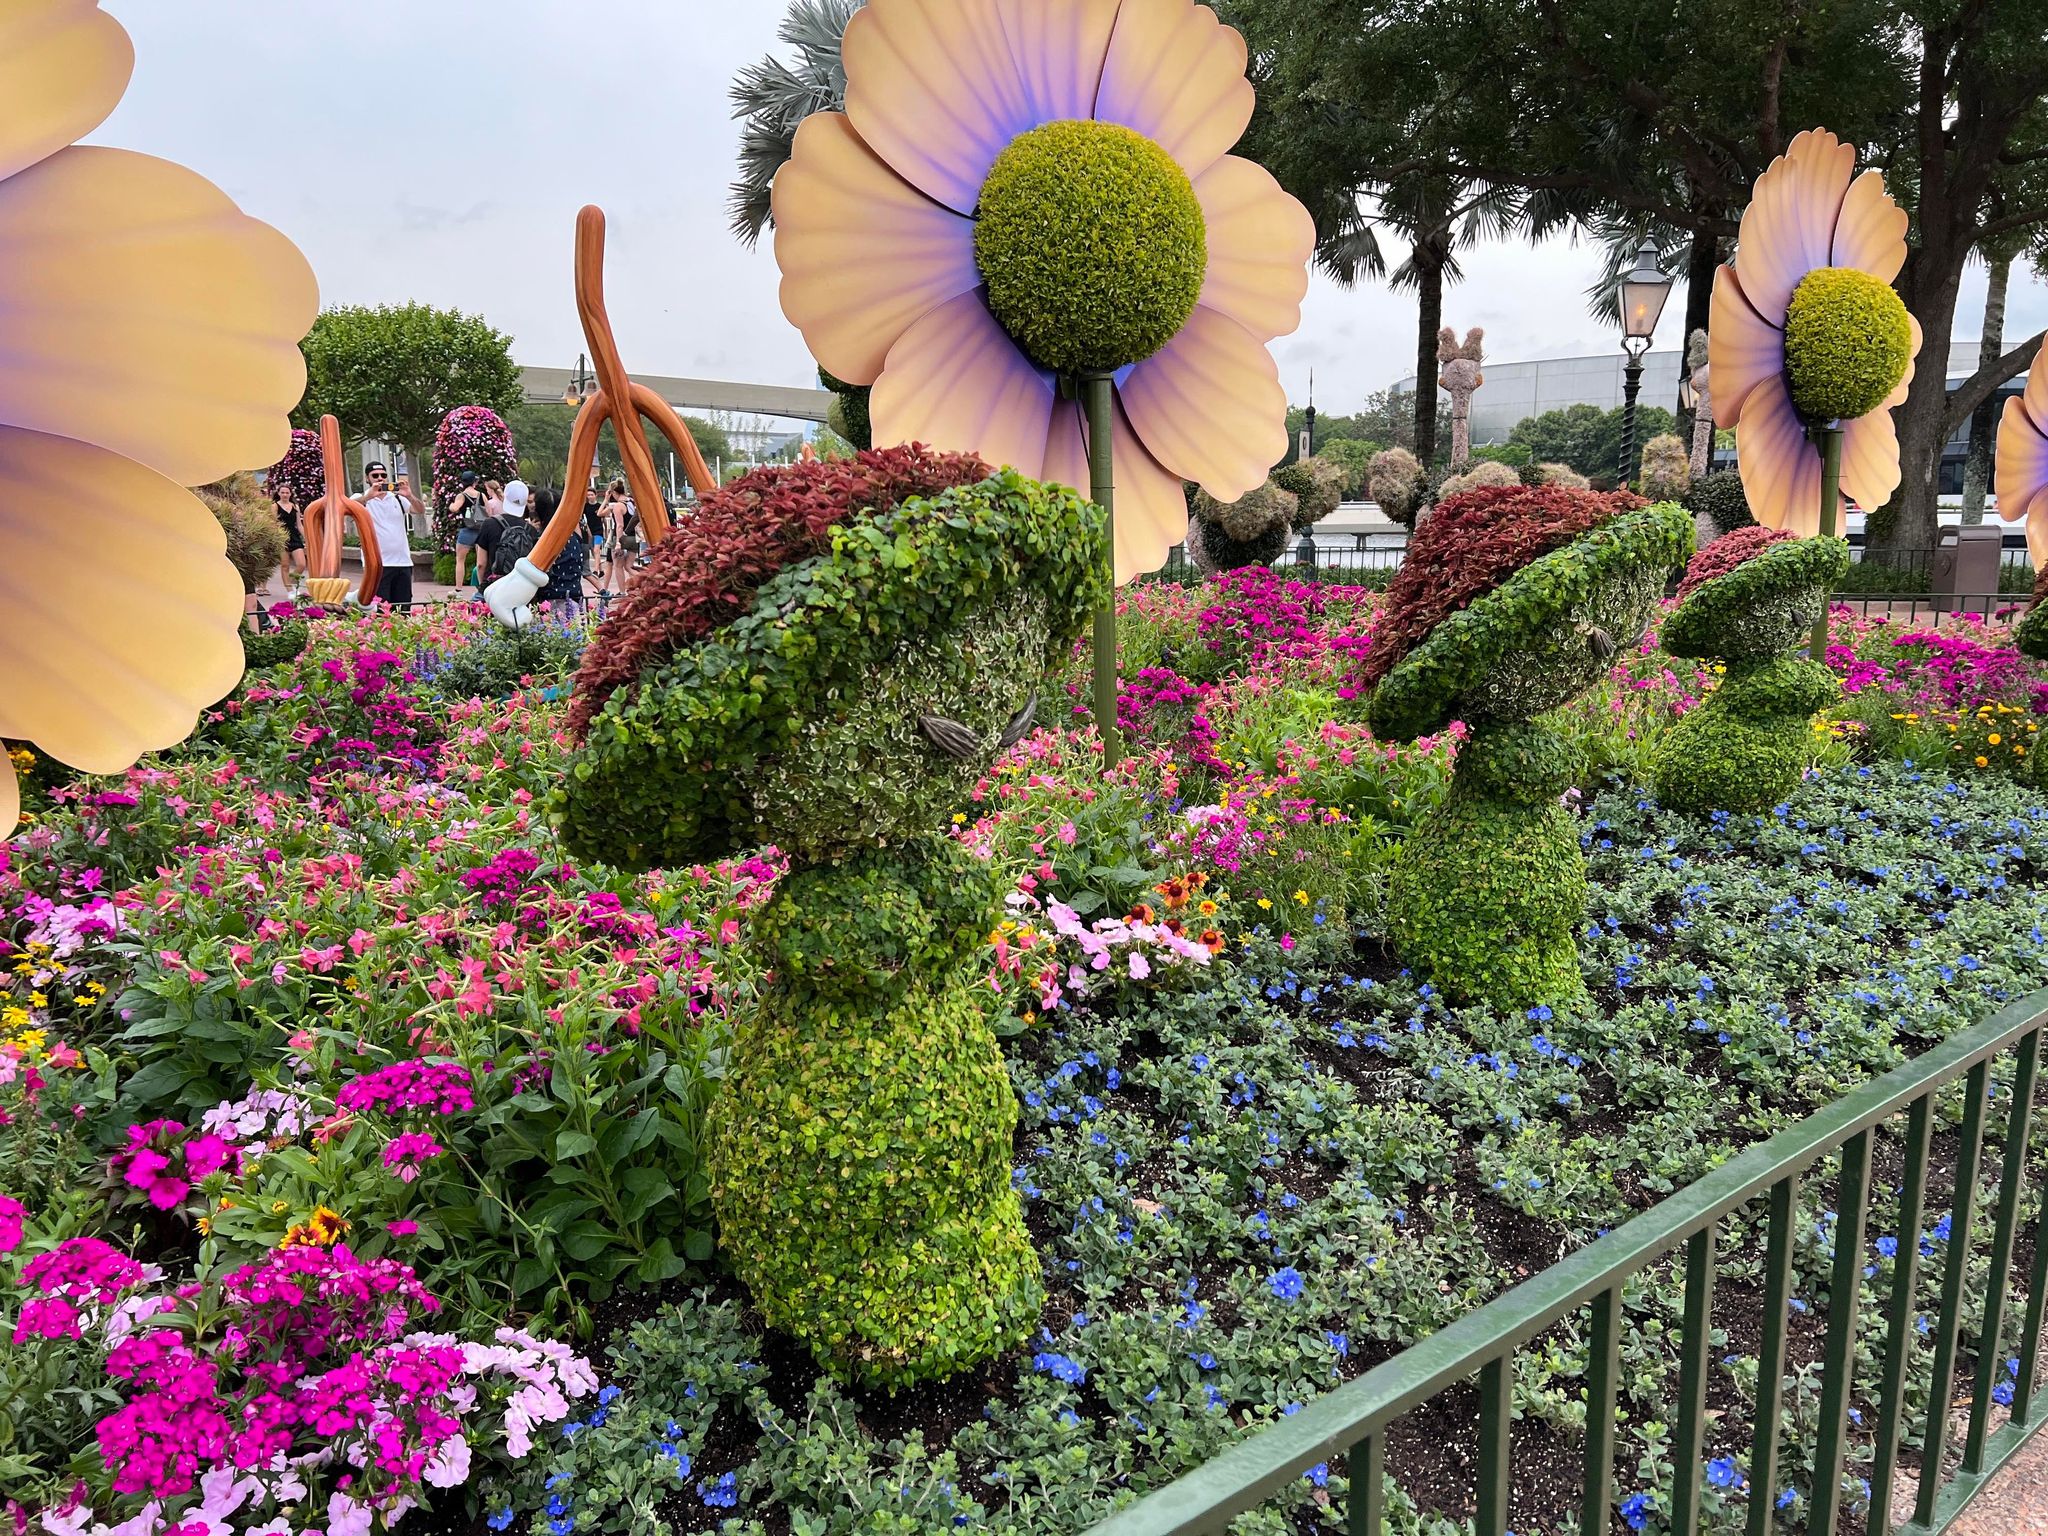 Fantasia Mushroom Topiaries Added To Flower & Garden Festival